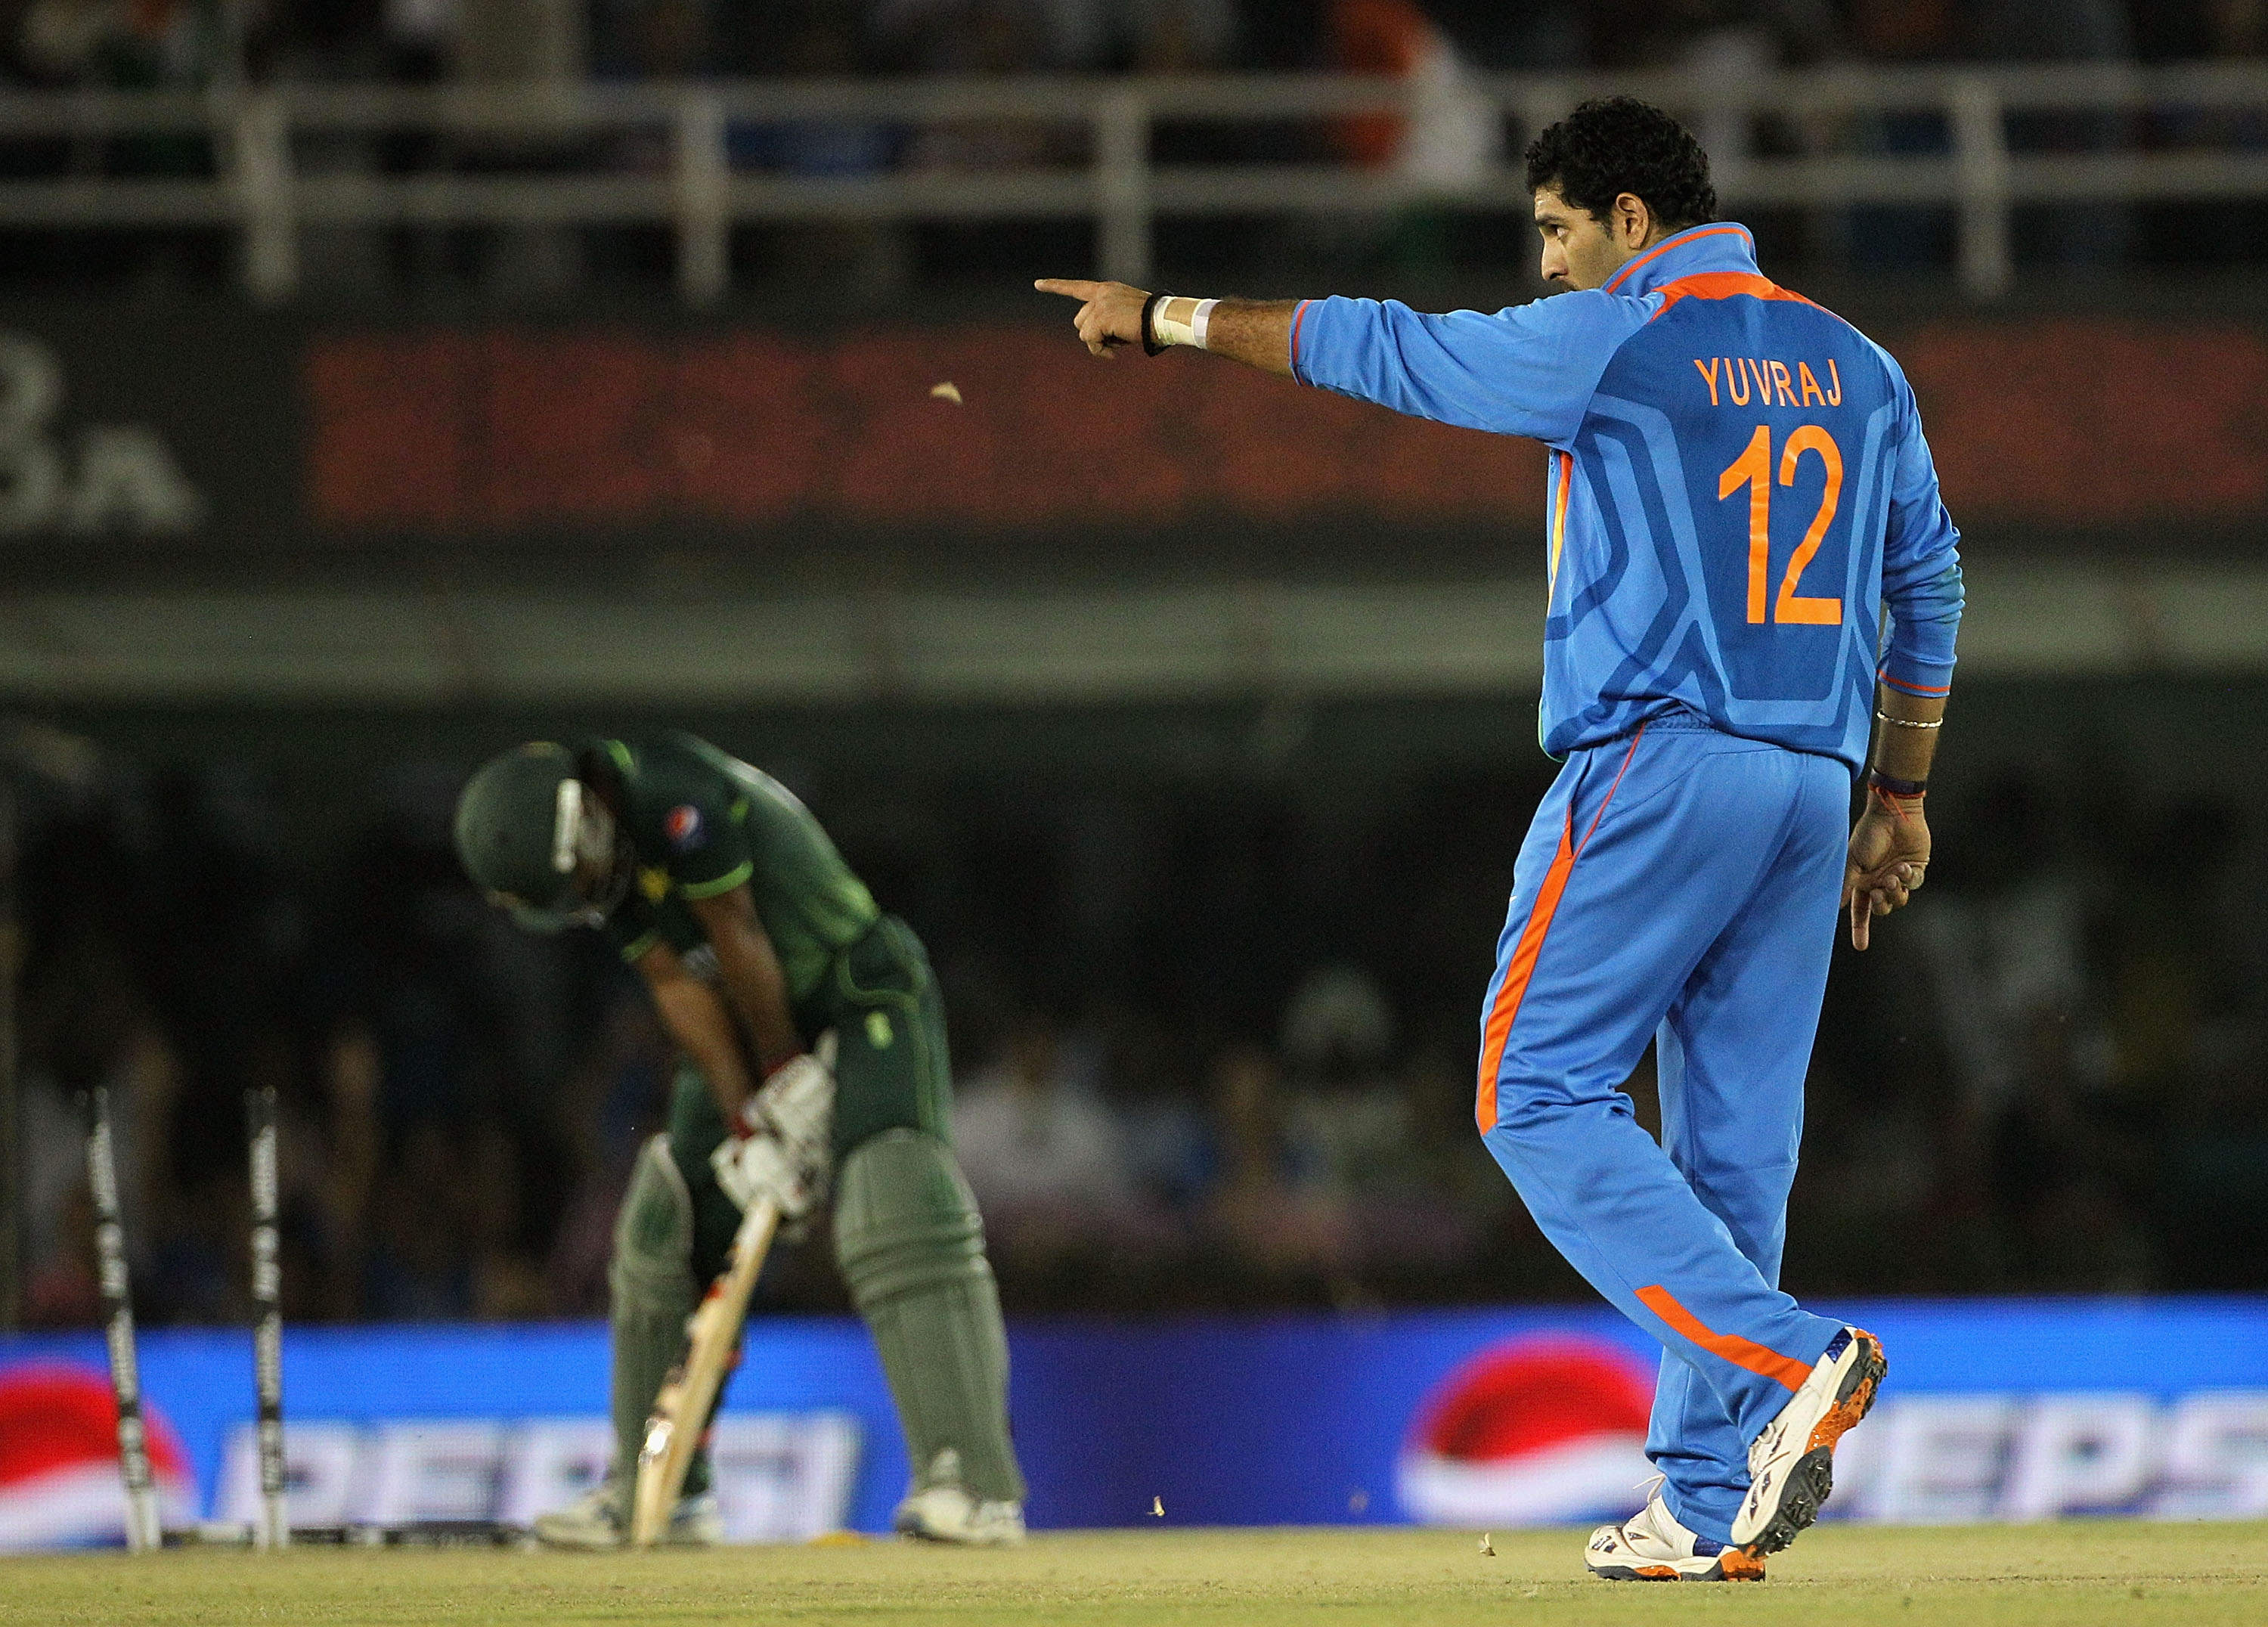 Yuvraj Singh After Taking Wicket